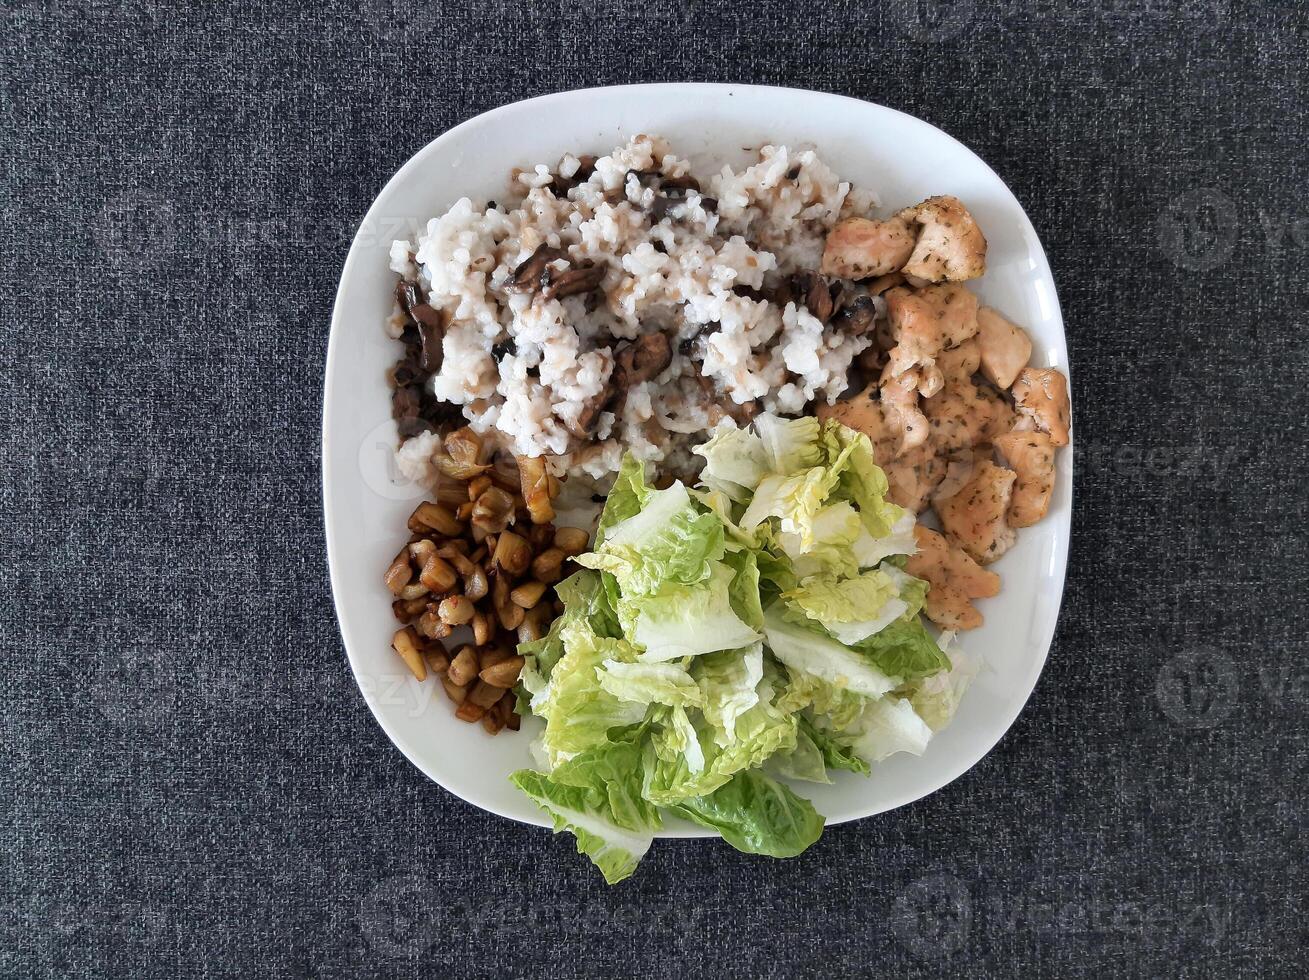 fait maison grillé poulet avec grillé haché aubergine, vert salade, et riz pilaf avec champignons photo